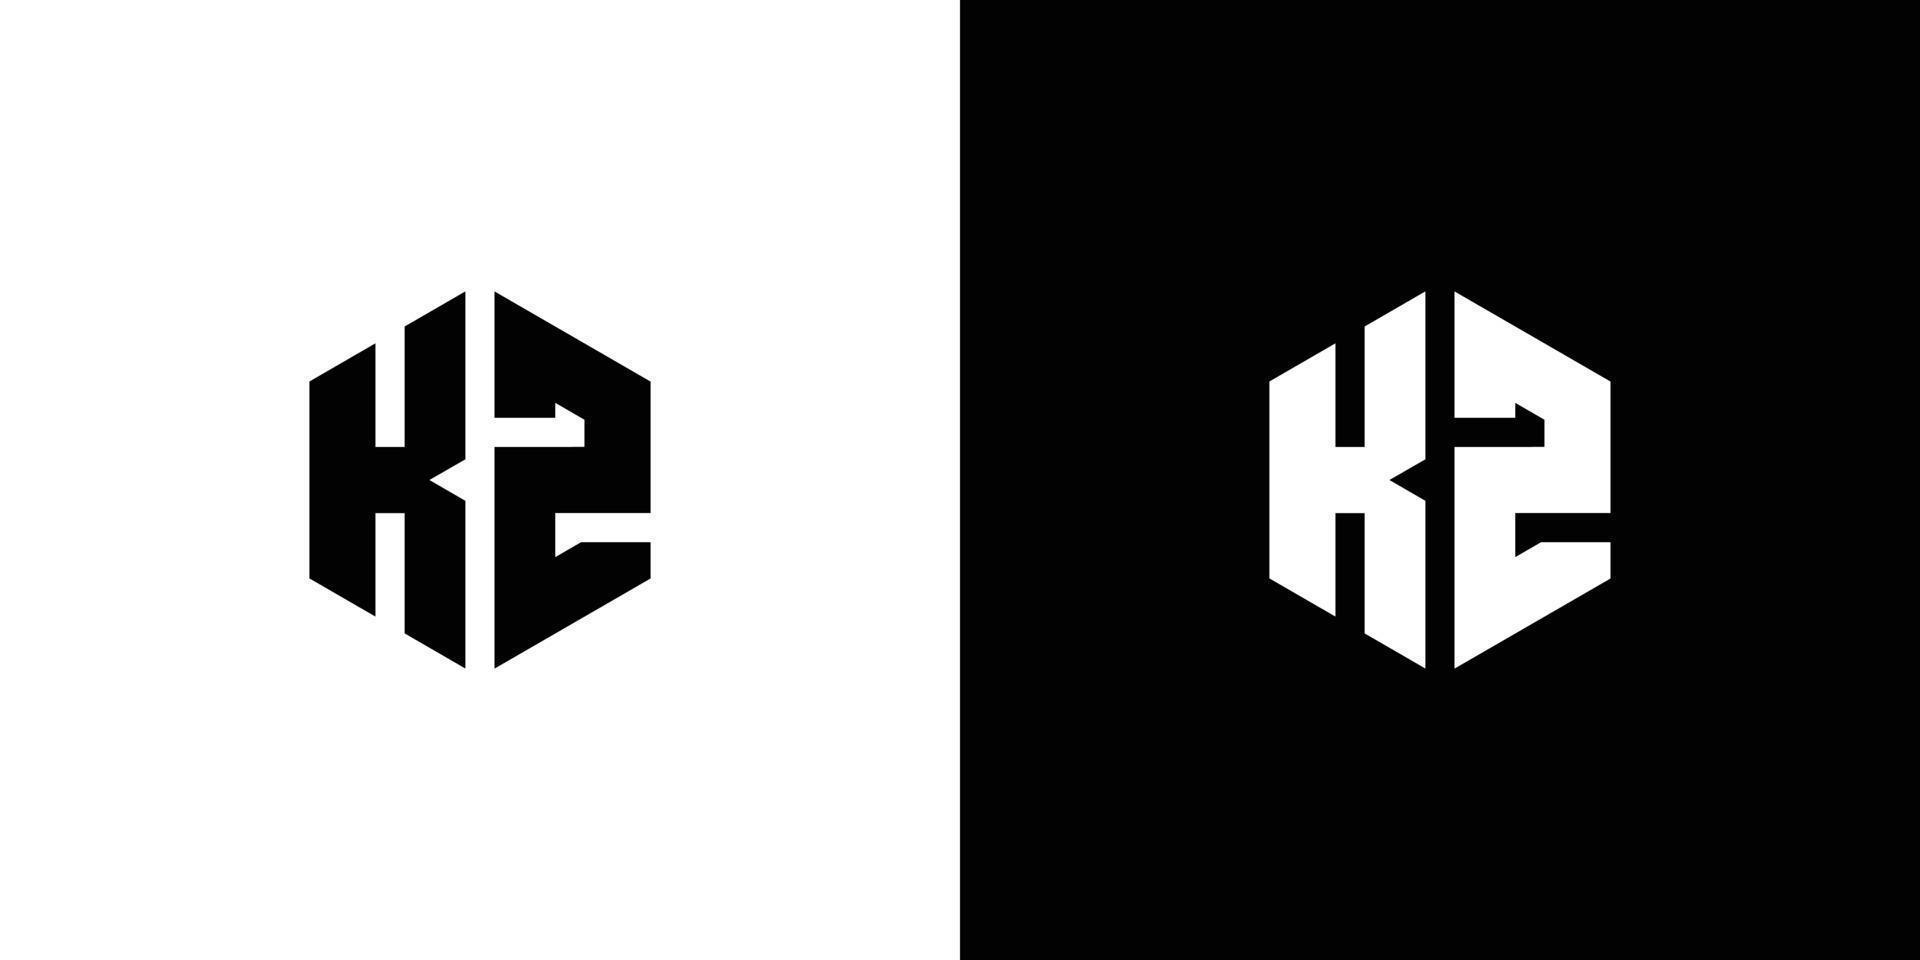 Letter K Z Polygon, Hexagonal Minimal Logo Design On Black And White Background vector